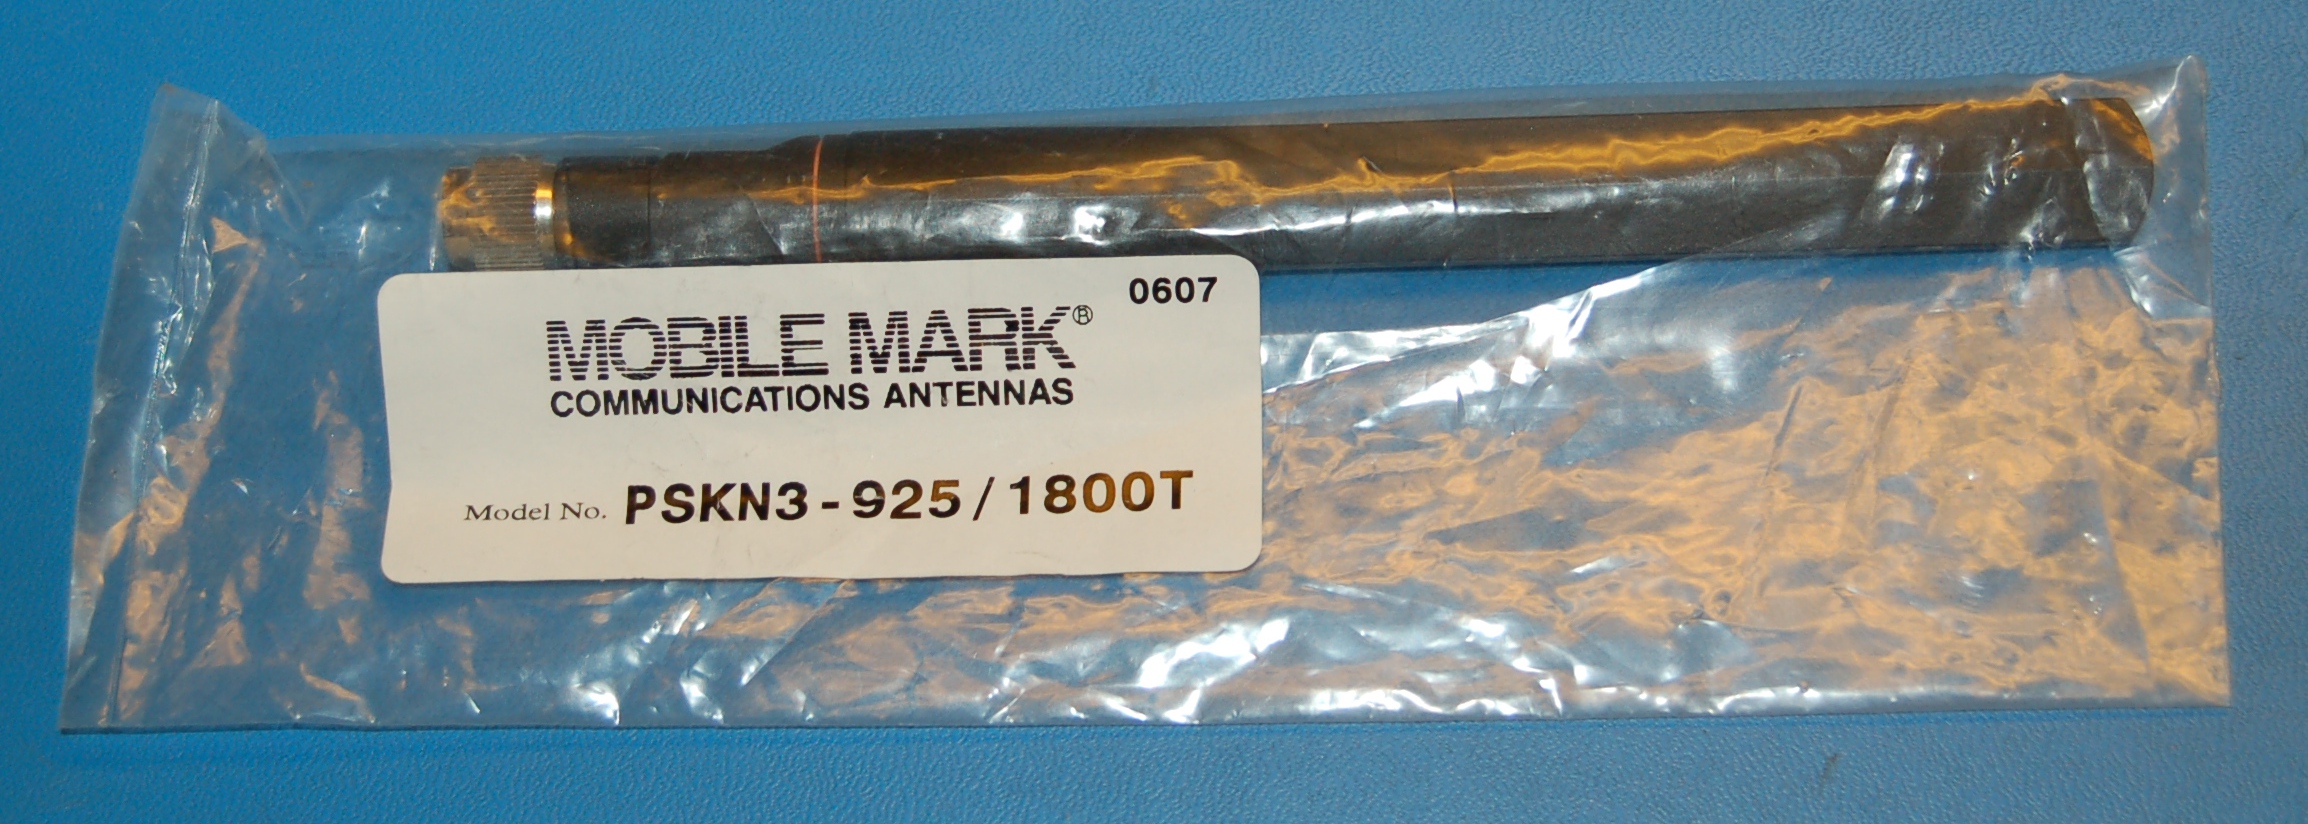 Mobile-Mark PKSN3 Antenna, Dual-Band, TNC - Cliquez sur l'image pour fermer